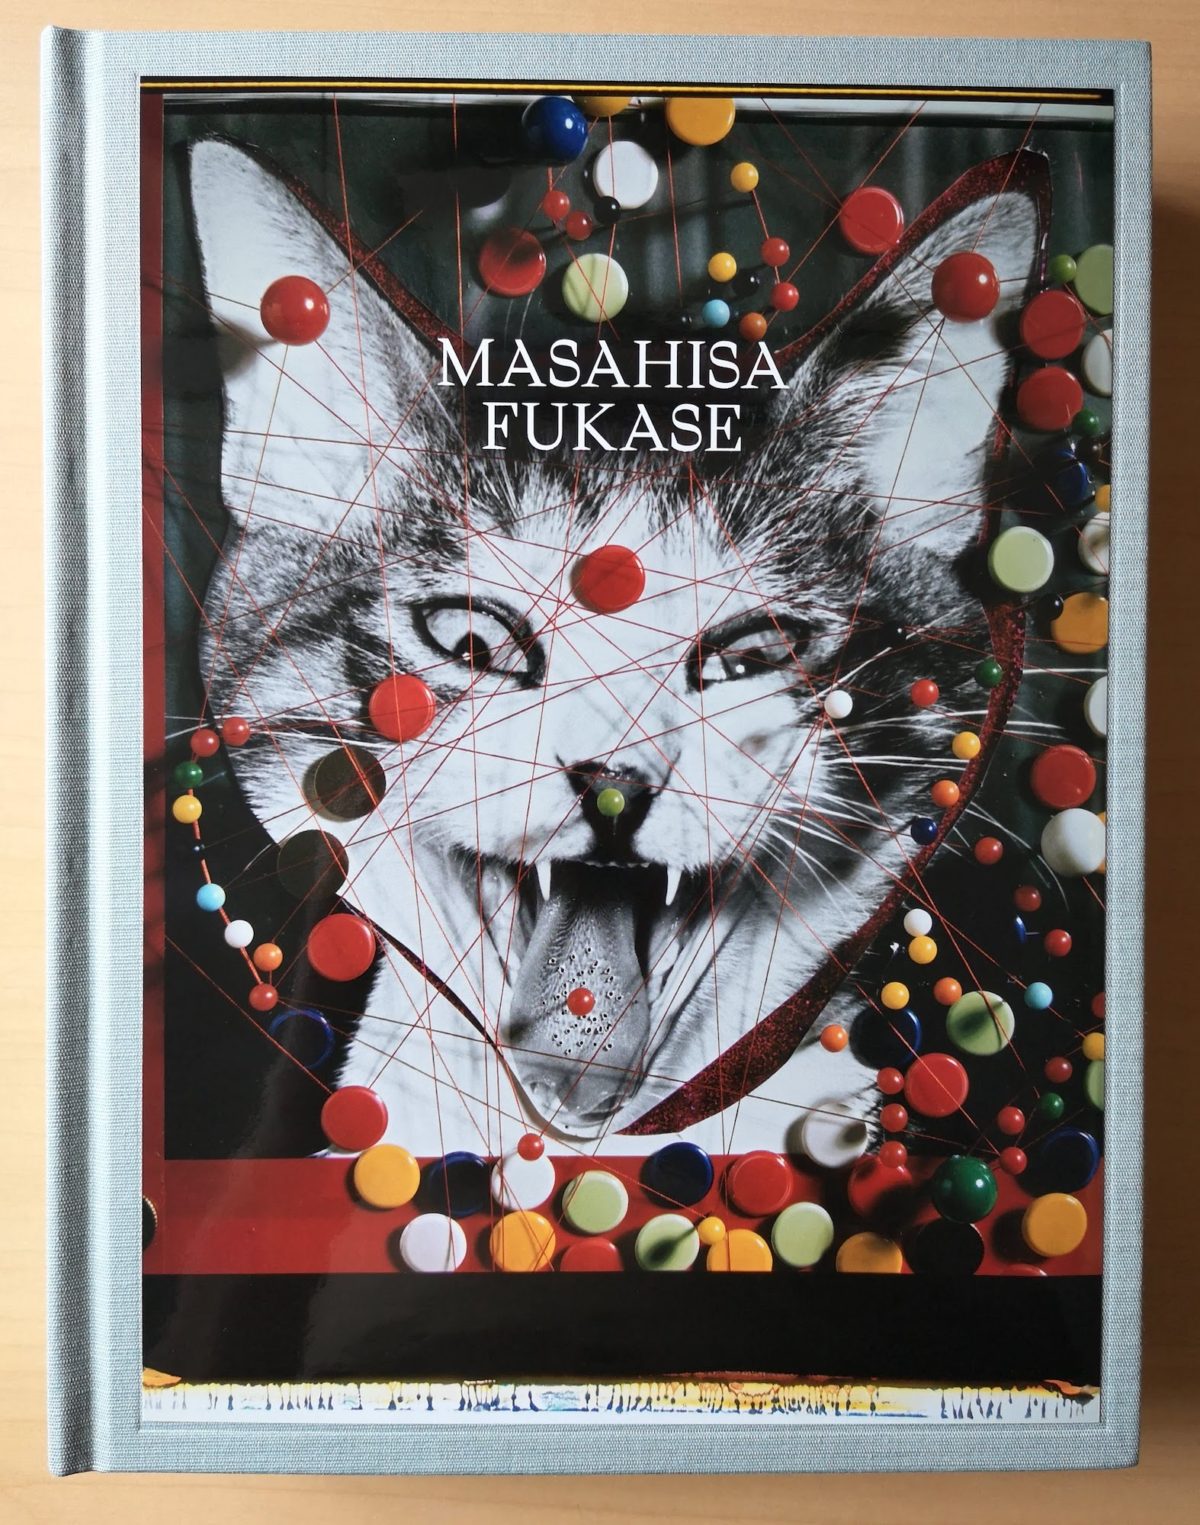 深瀬昌久の大回顧作品集「MASAHISA FUKASE」を購入